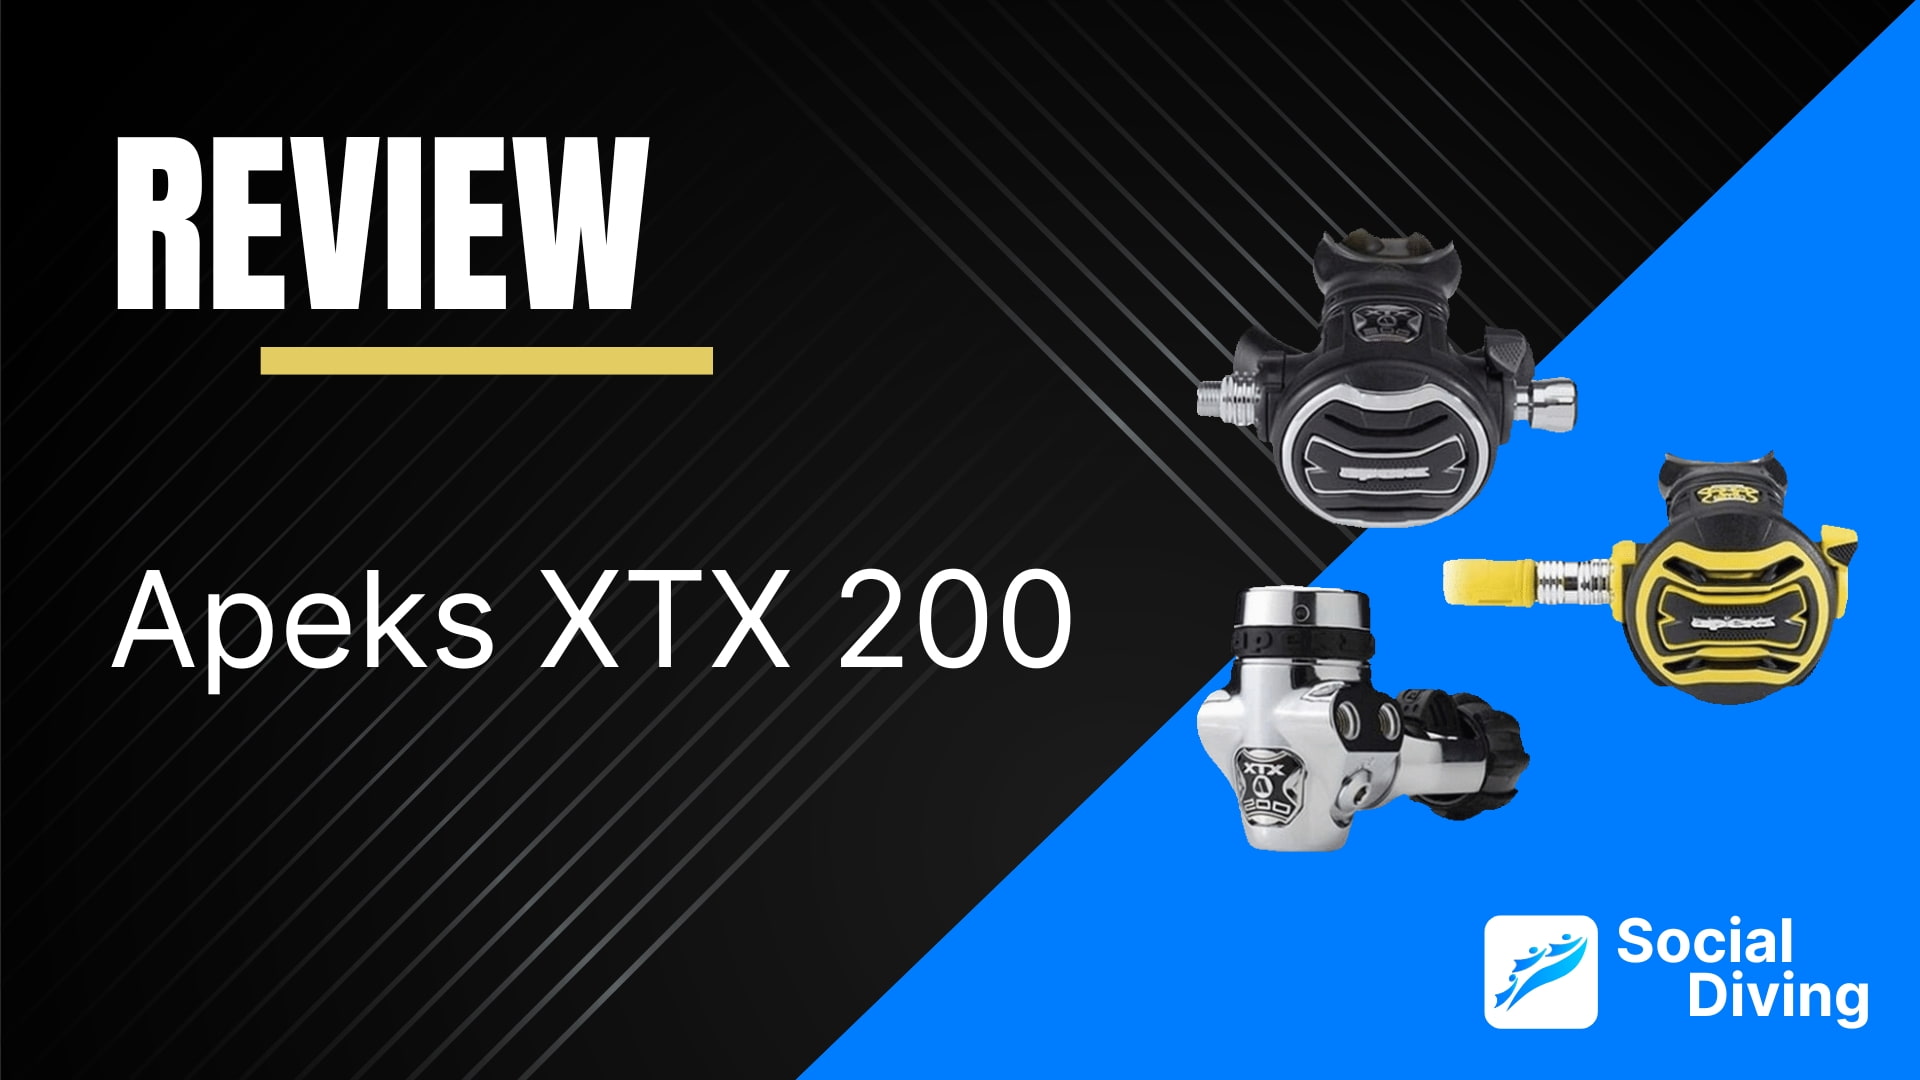 Apeks XTX200 review